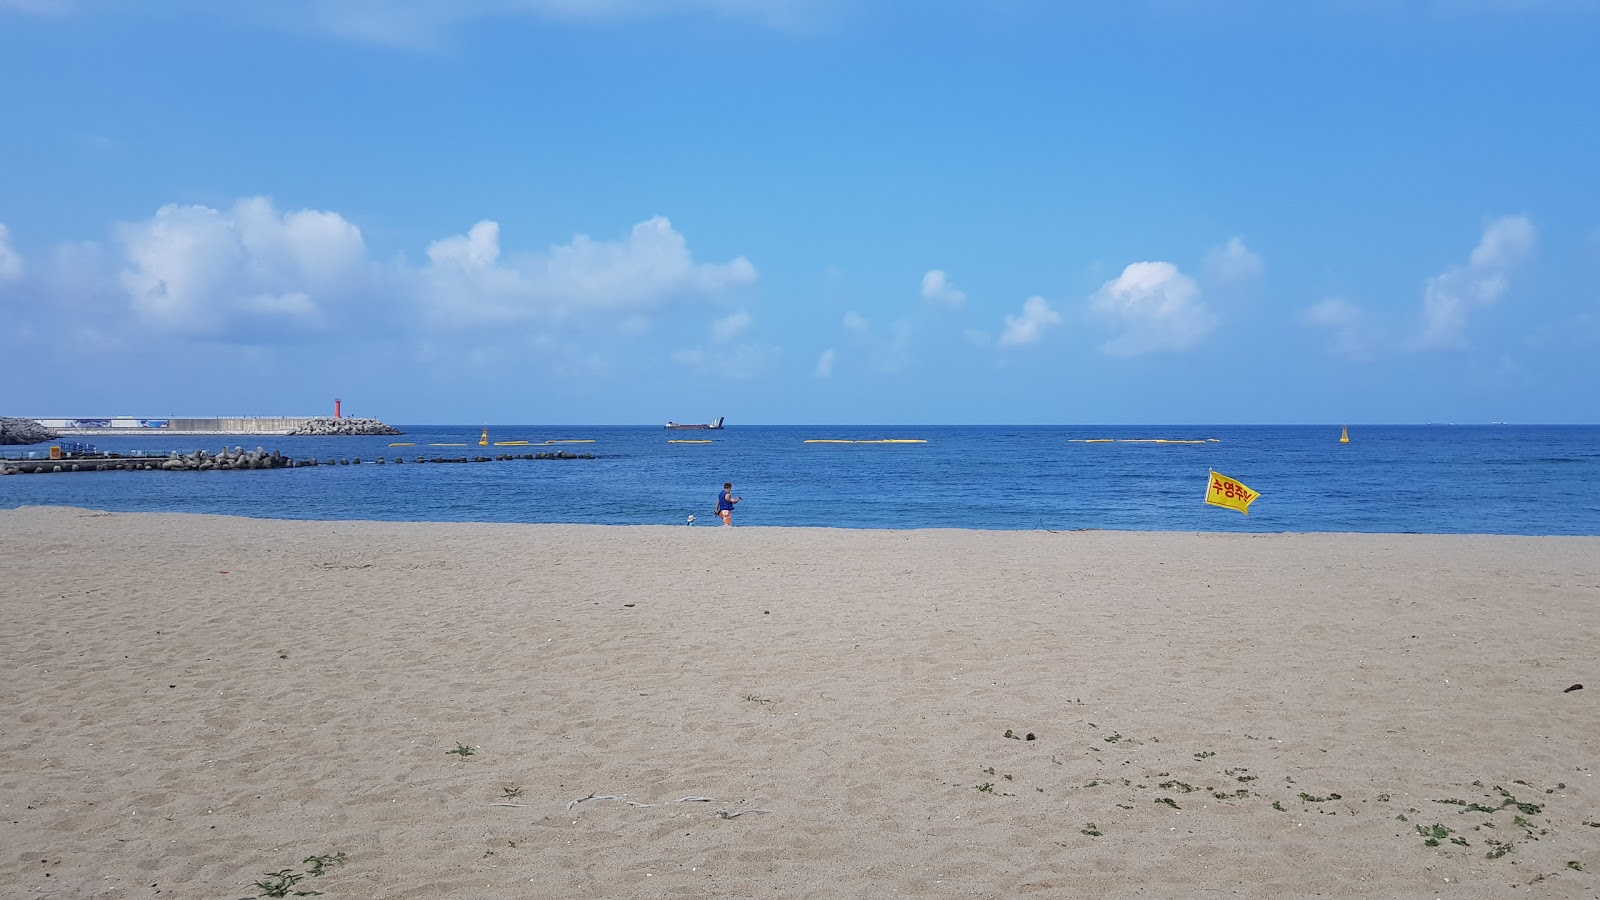 Photo de Namhangjin Beach - endroit populaire parmi les connaisseurs de la détente